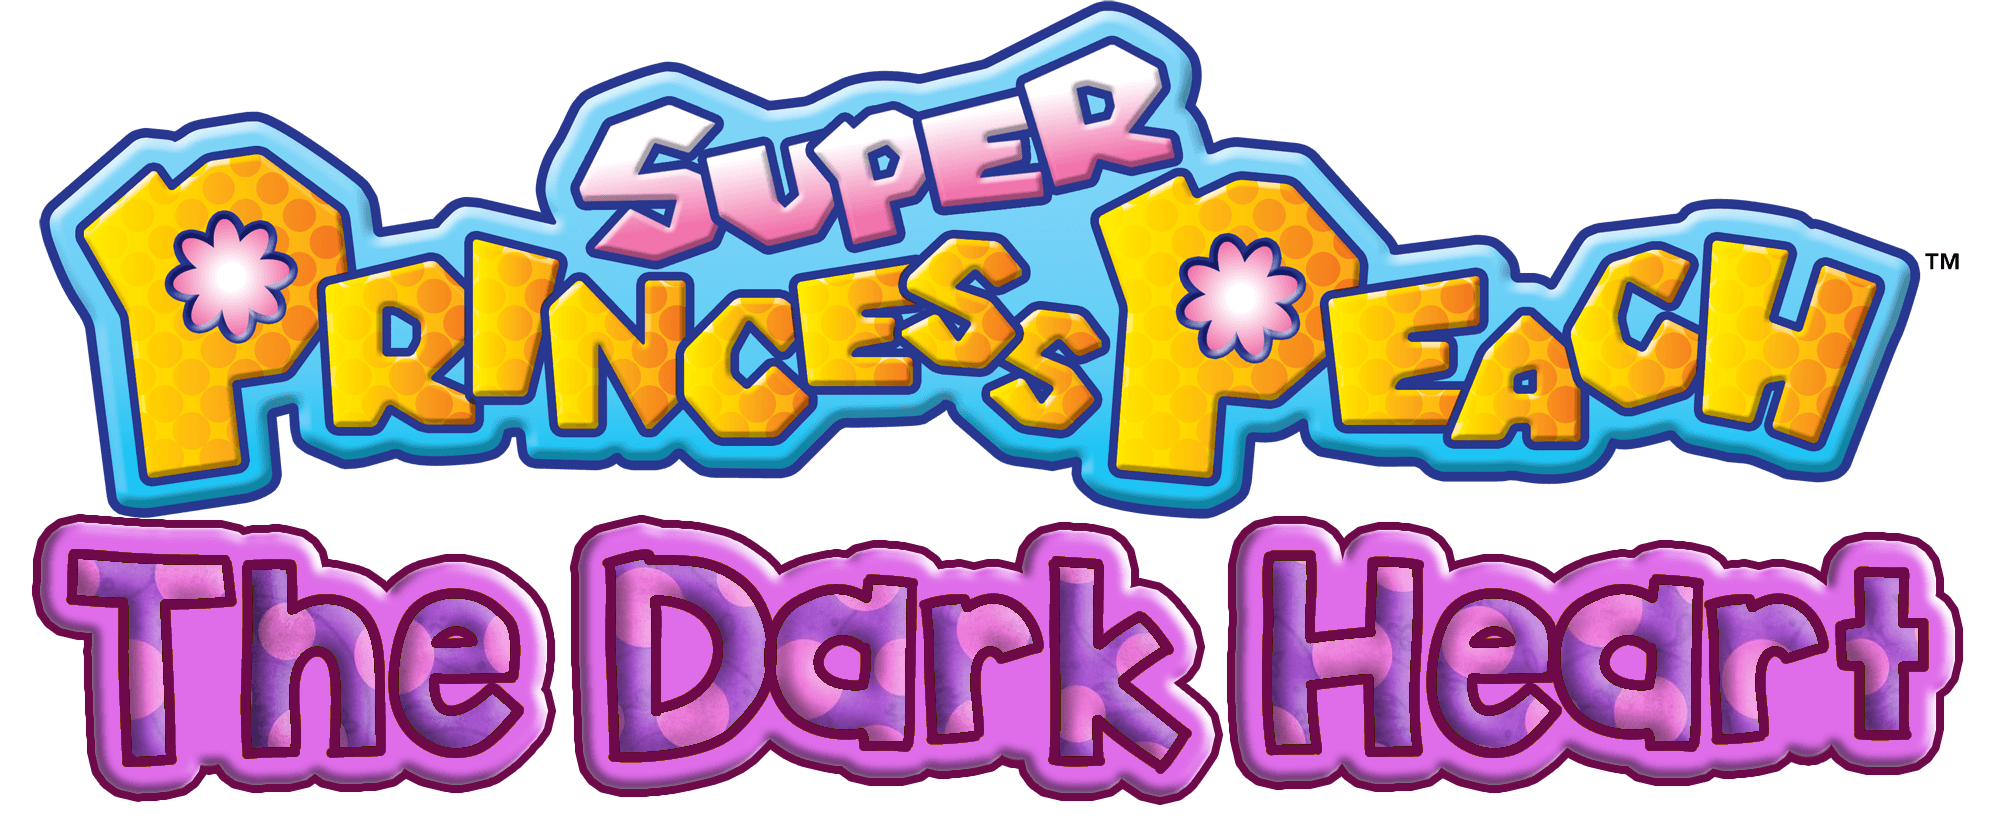 Super Princess Peach Logo - Super Princess Peach: The Dark Heart | Fantendo - Nintendo Fanon ...